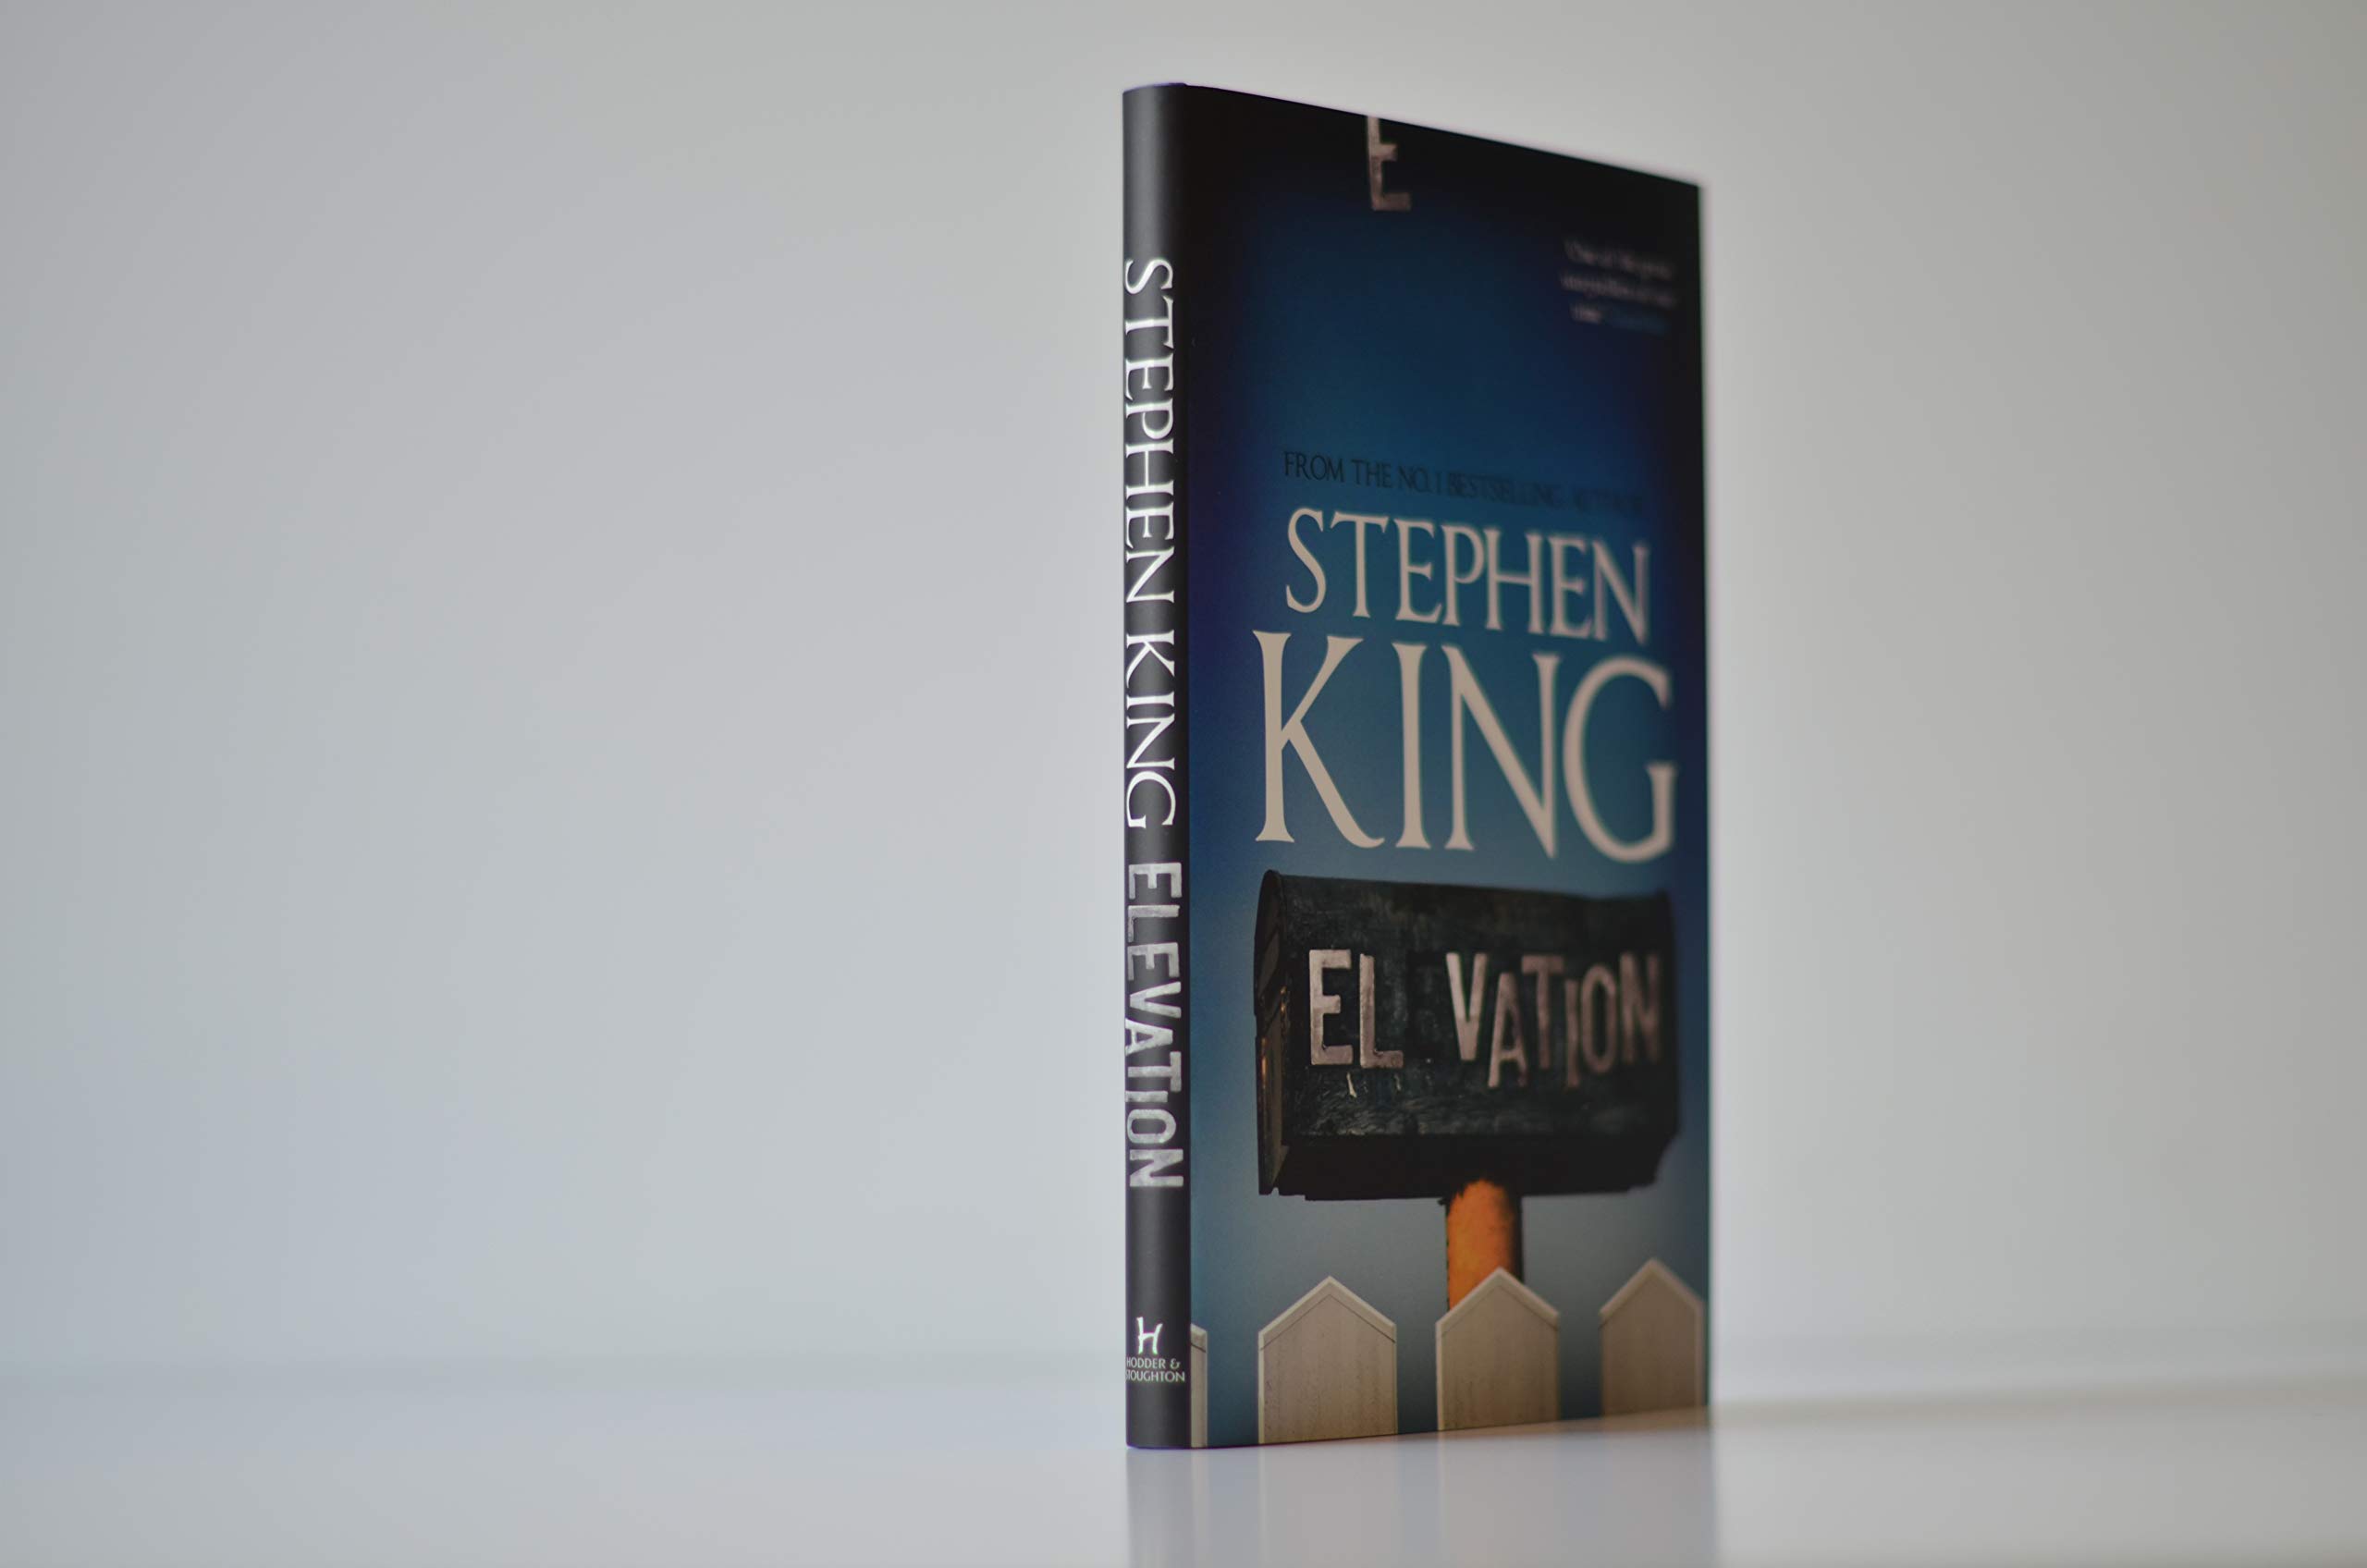 Elevation | Stephen King